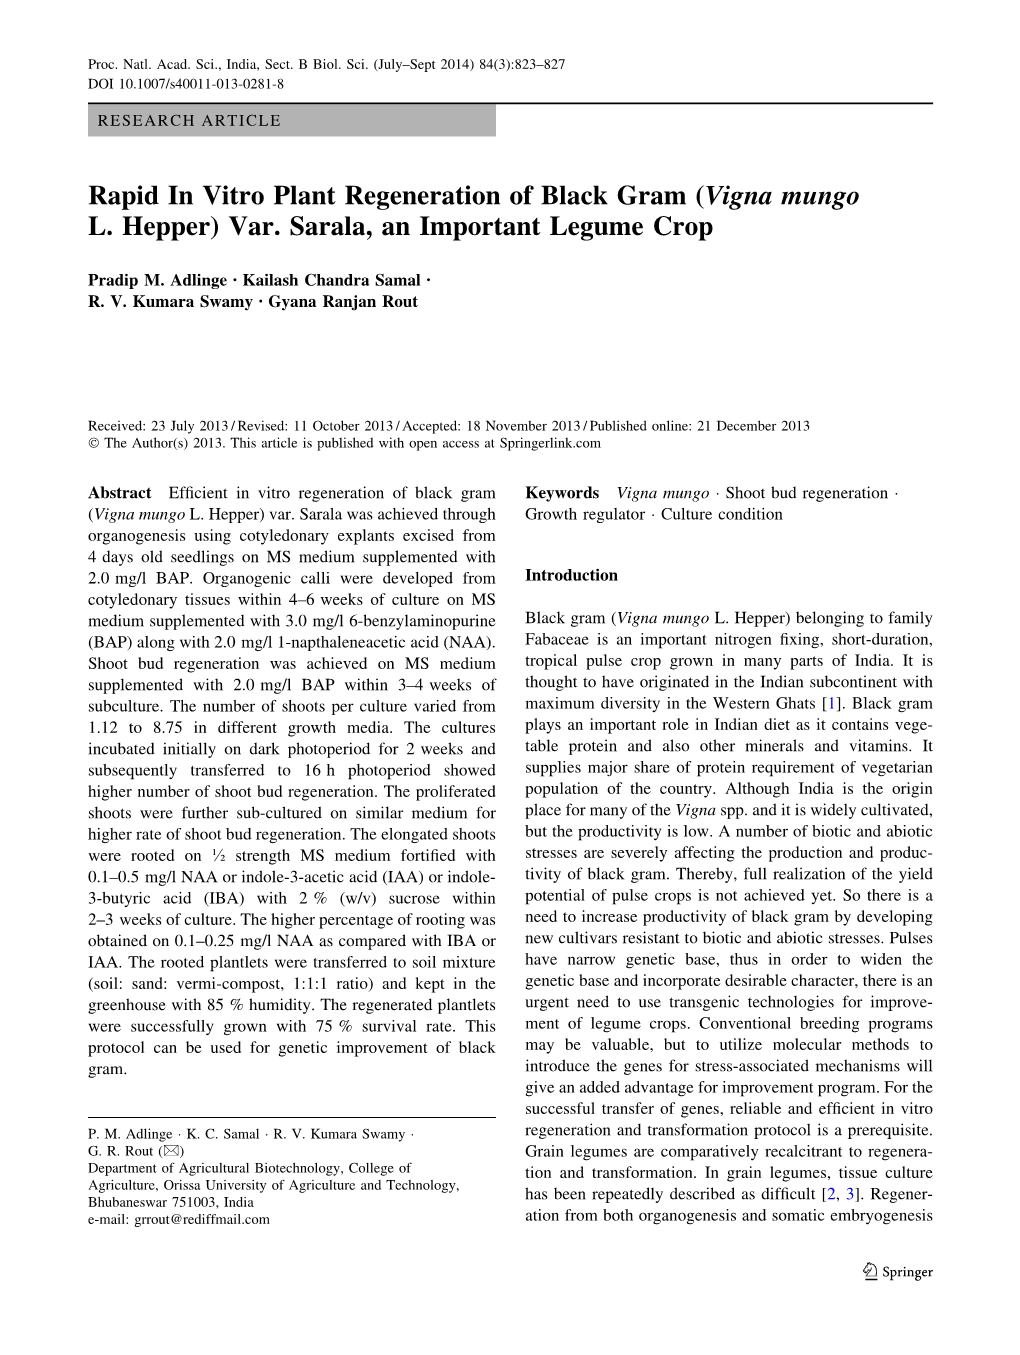 Rapid in Vitro Plant Regeneration of Black Gram (Vigna Mungo L. Hepper) Var